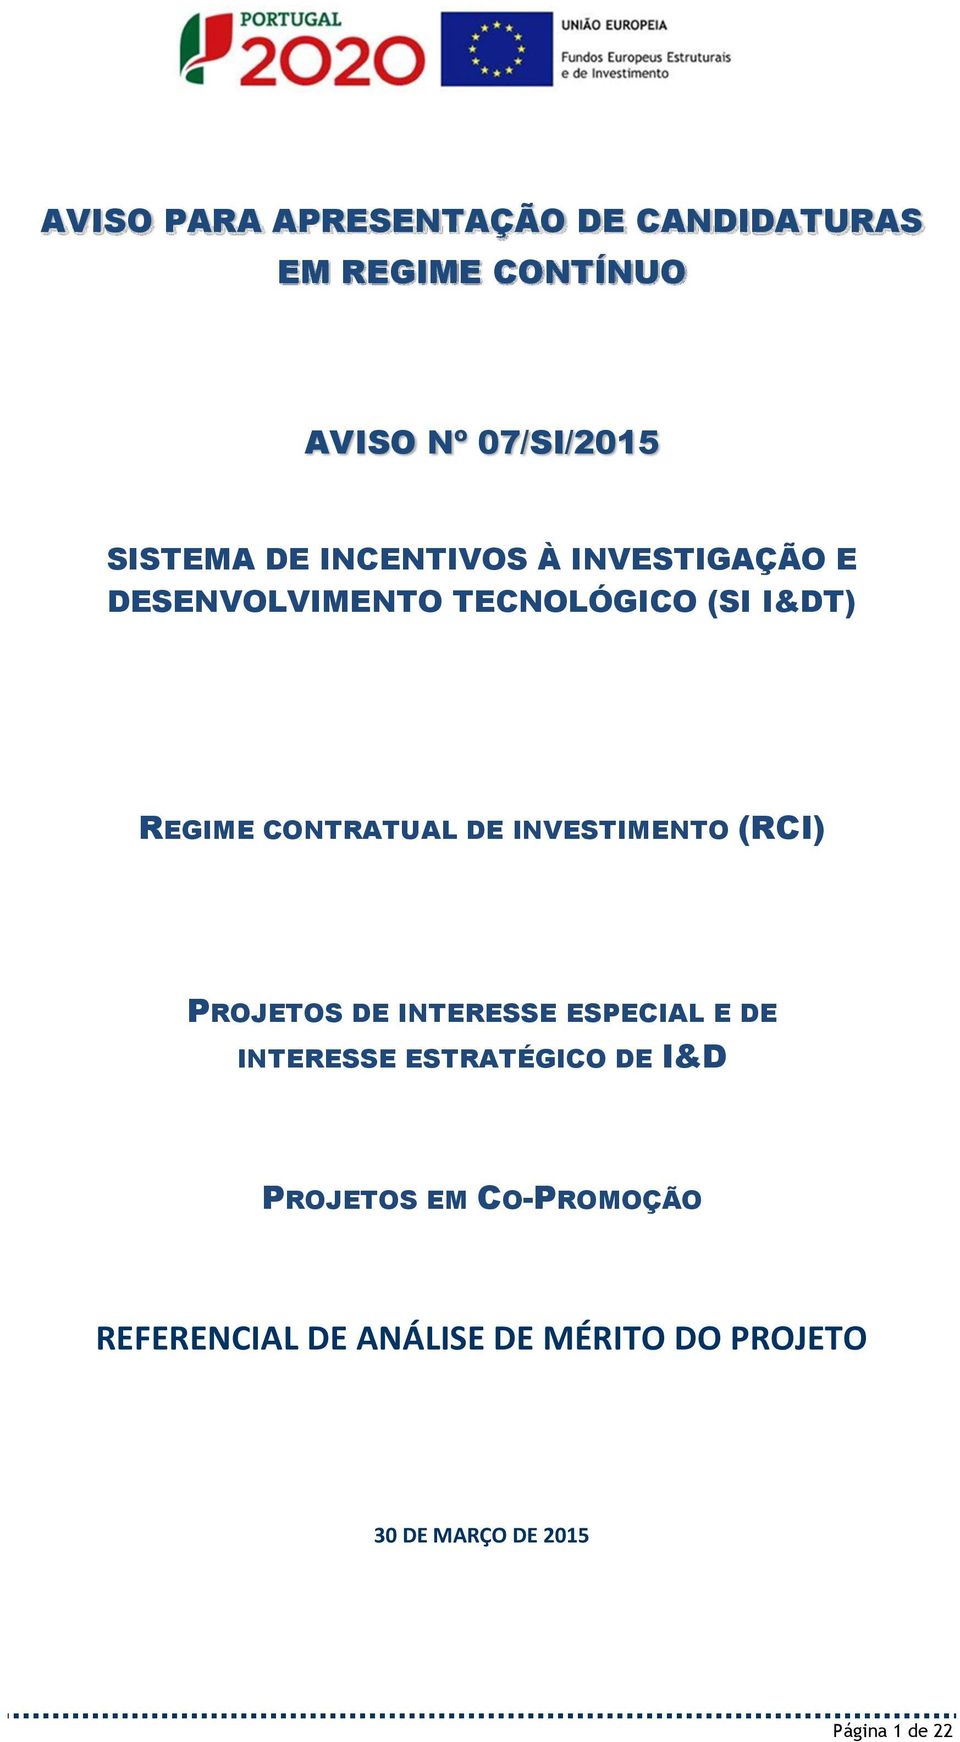 INVESTIMENTO (RCI) PROJETOS DE INTERESSE ESPECIAL E DE INTERESSE ESTRATÉGICO DE I&D